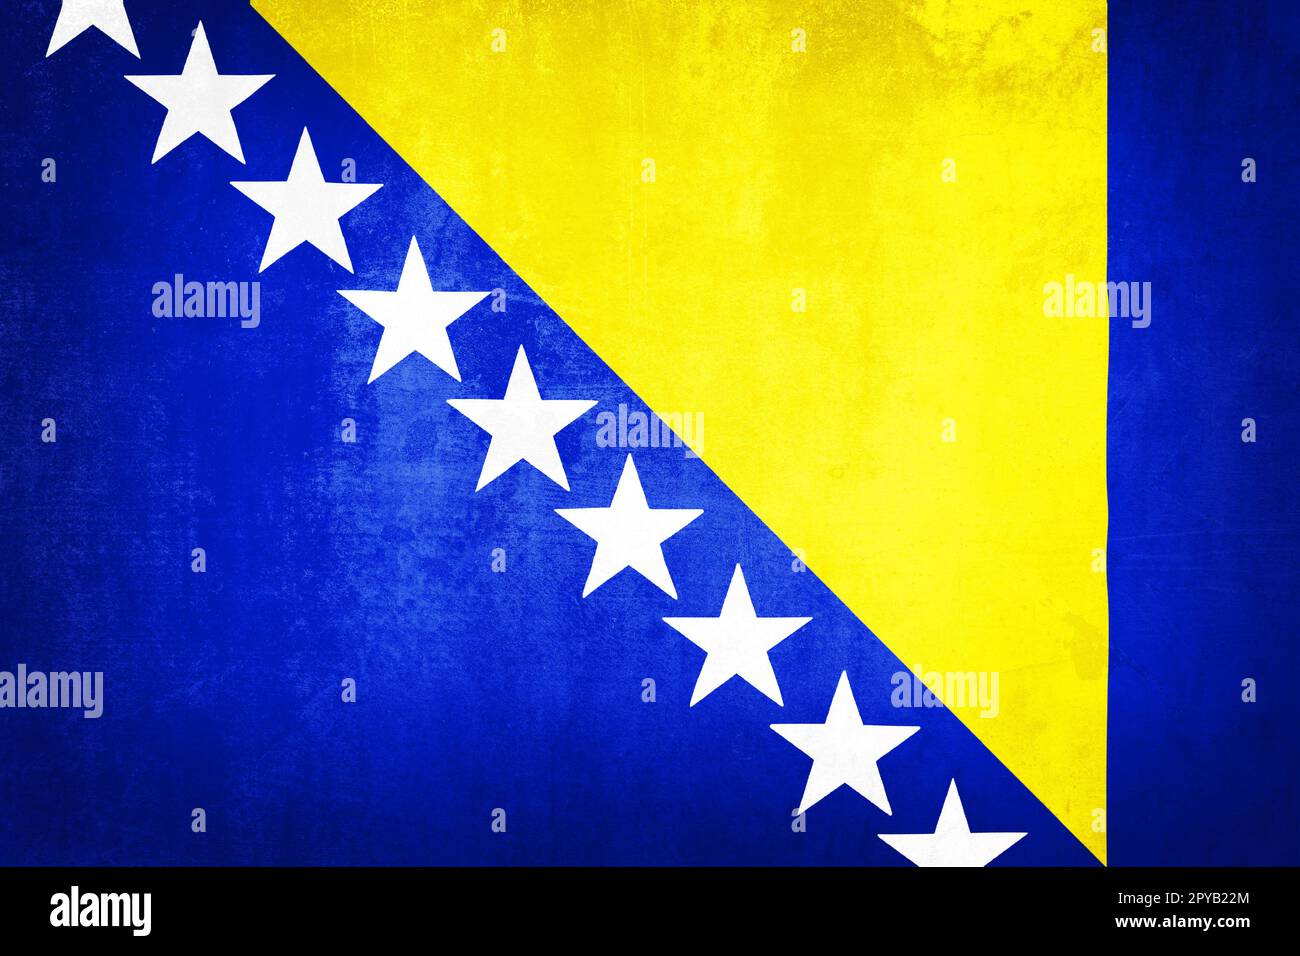 Grunge illustration of Bosnia and Herzegovina flag Stock Photo